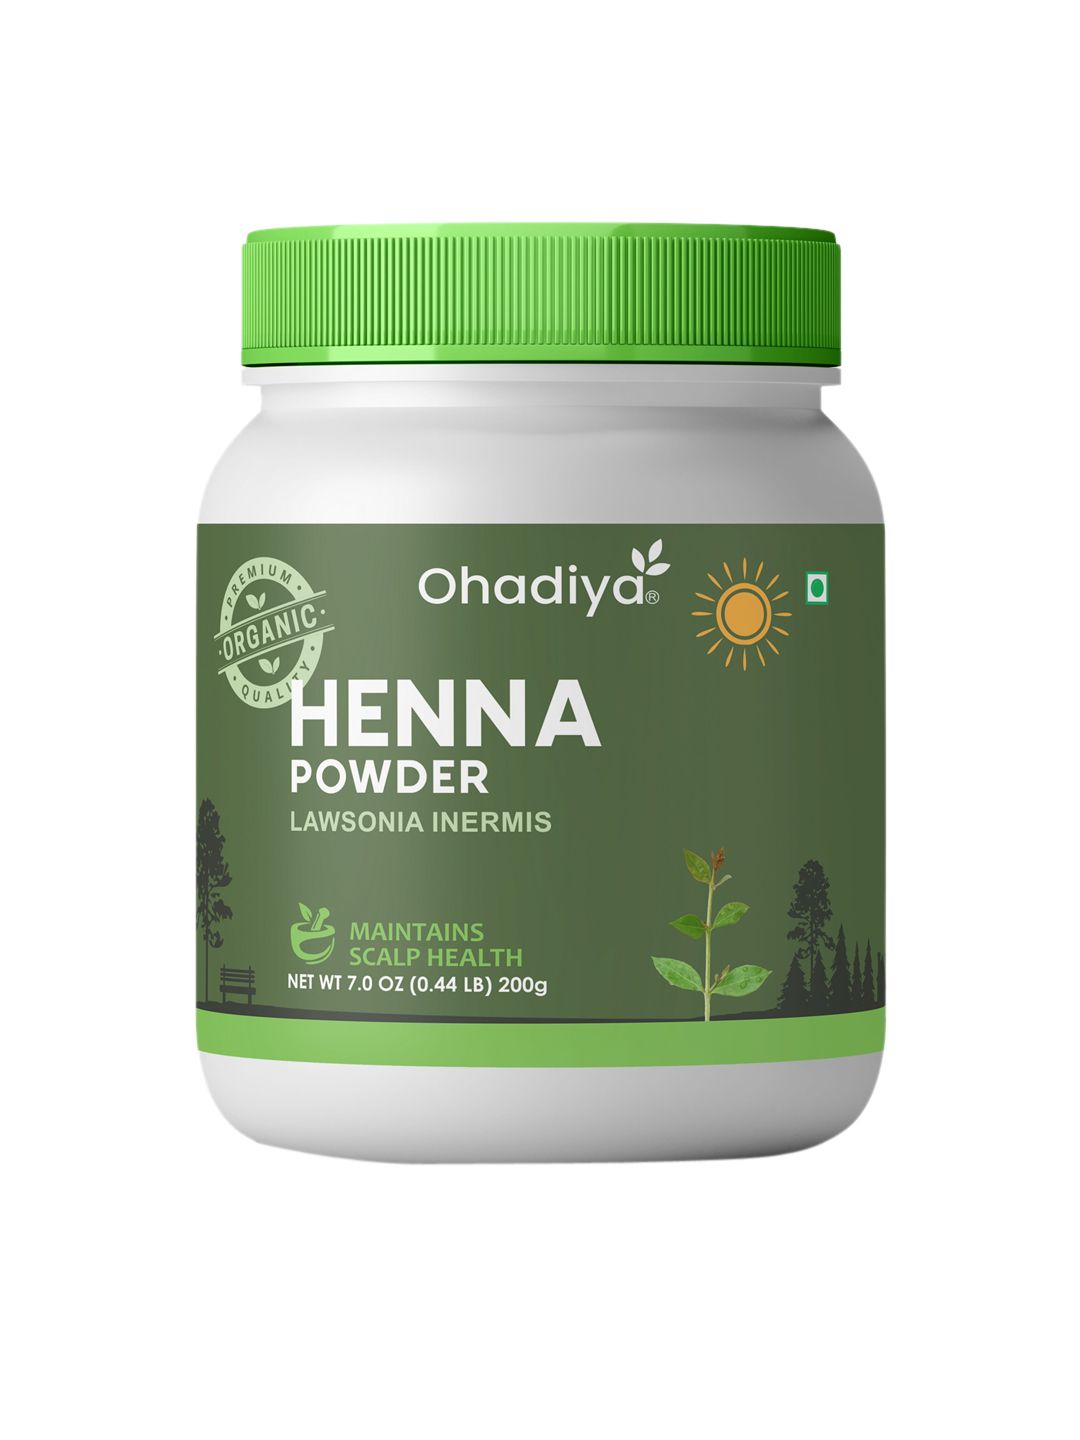 Ohadiya Premium Organic Henna Powder For Scalp Health - 200 g Price in India